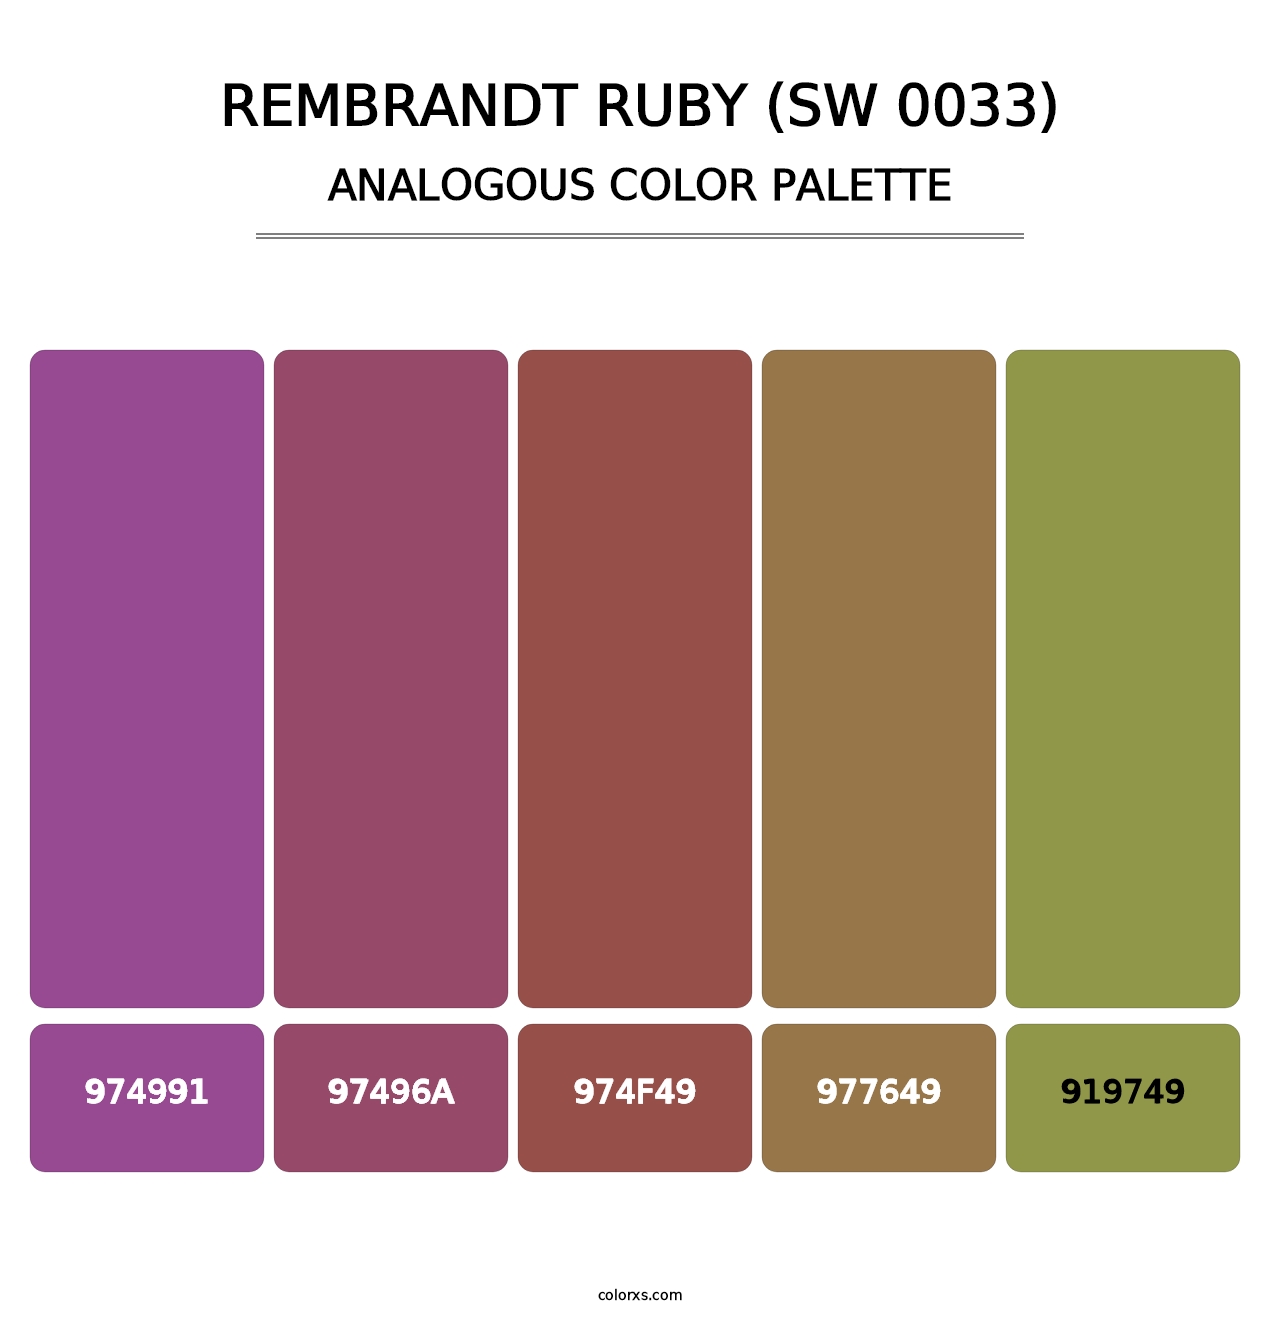 Rembrandt Ruby (SW 0033) - Analogous Color Palette